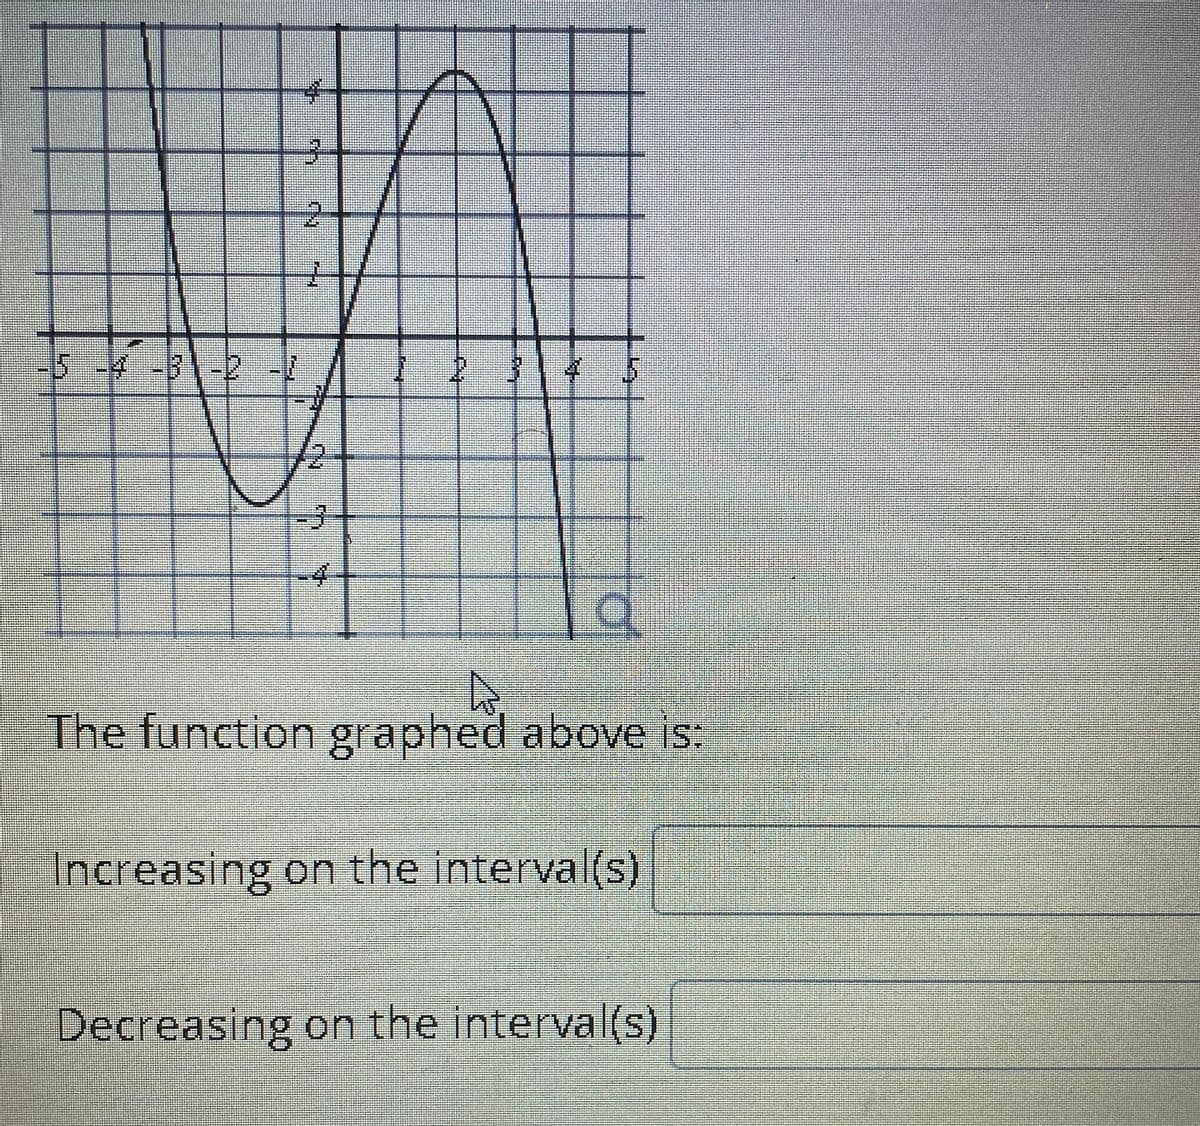 1オ14- 4
The function graphed above is
Increasing on the interval(s)
Decreasing on the interval(s)
